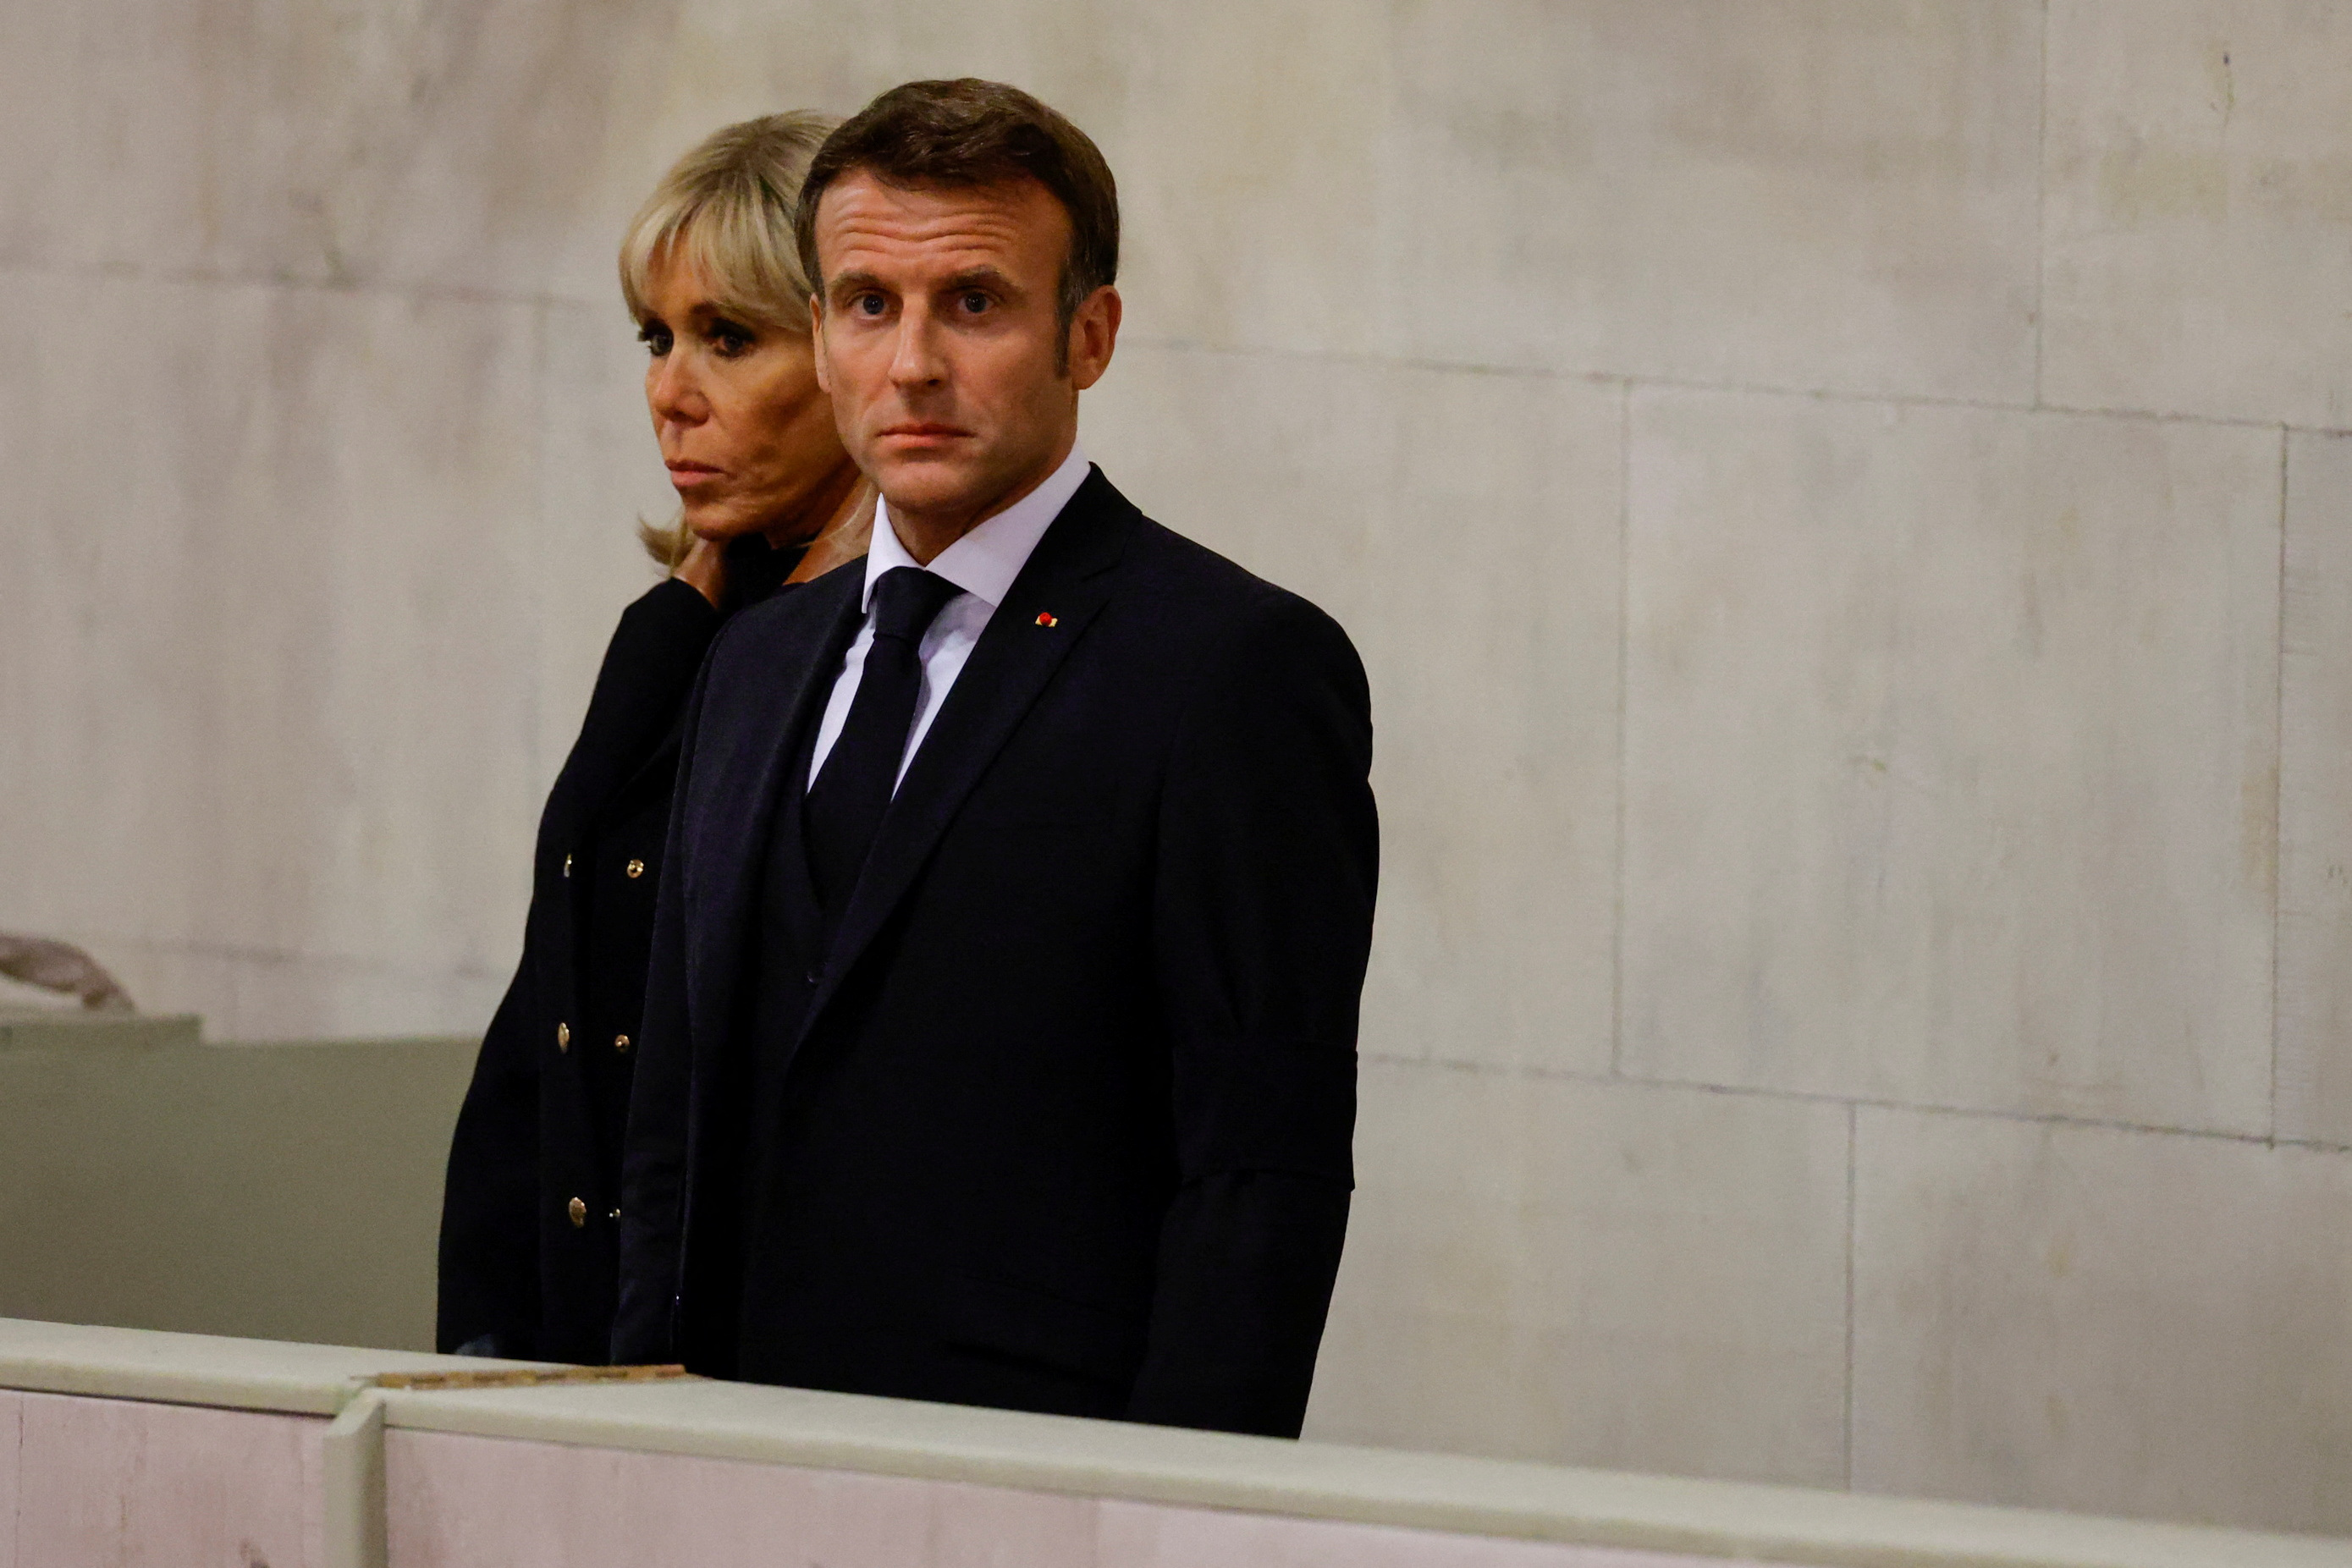 жена президента франции макрона и панин